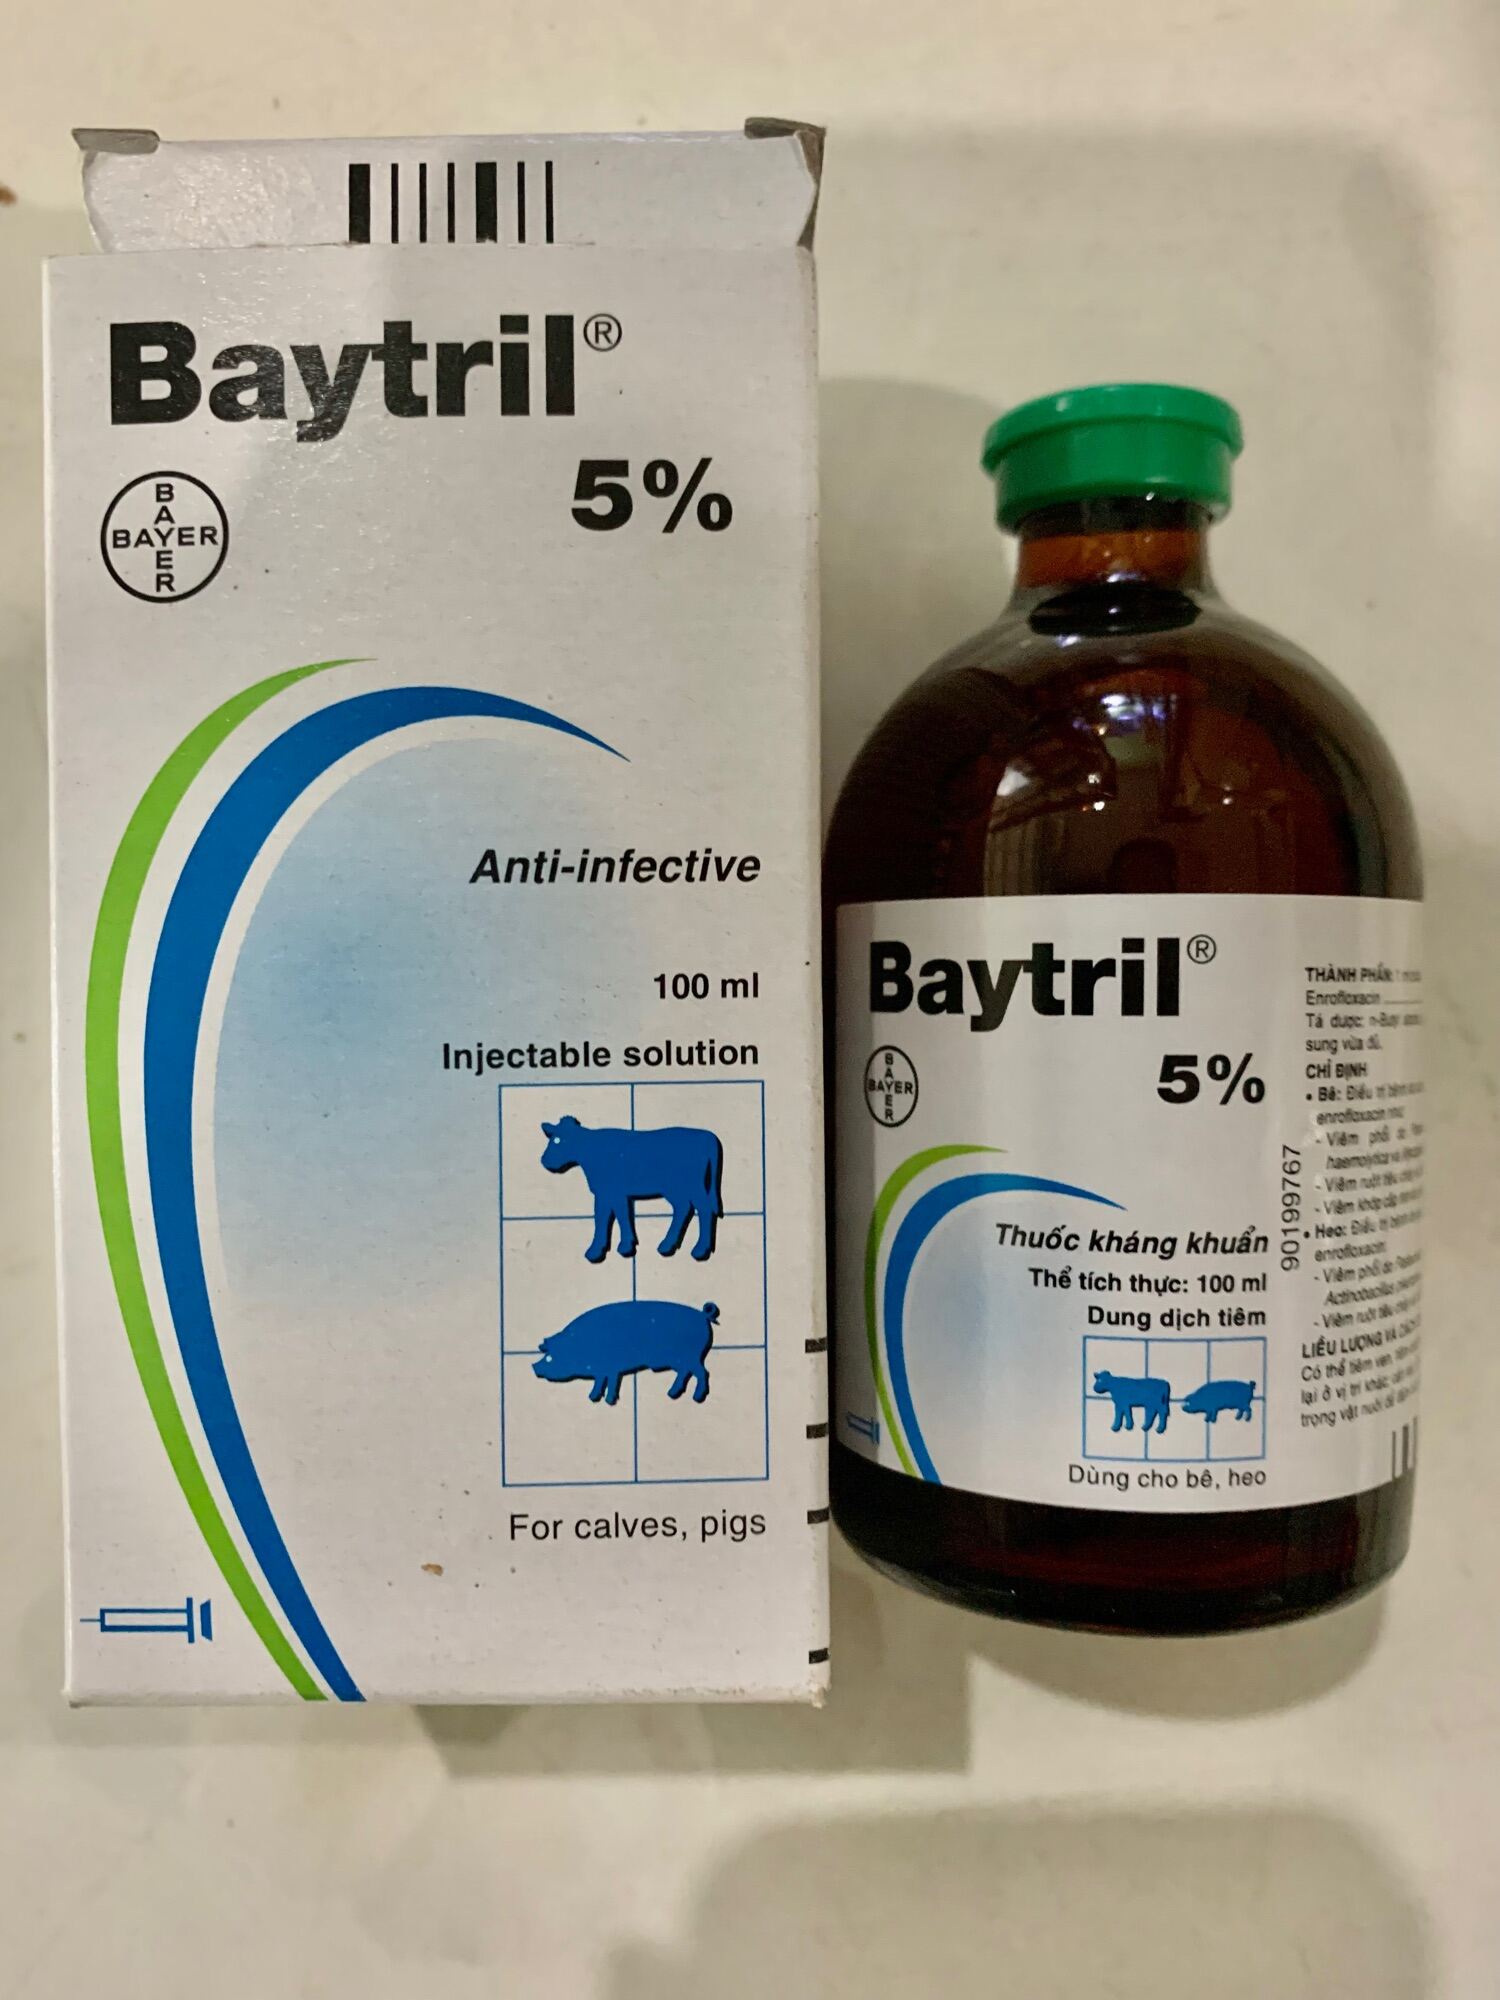 10 ml Baytril 5% bayyer triết lẻ hàng chính hãng.